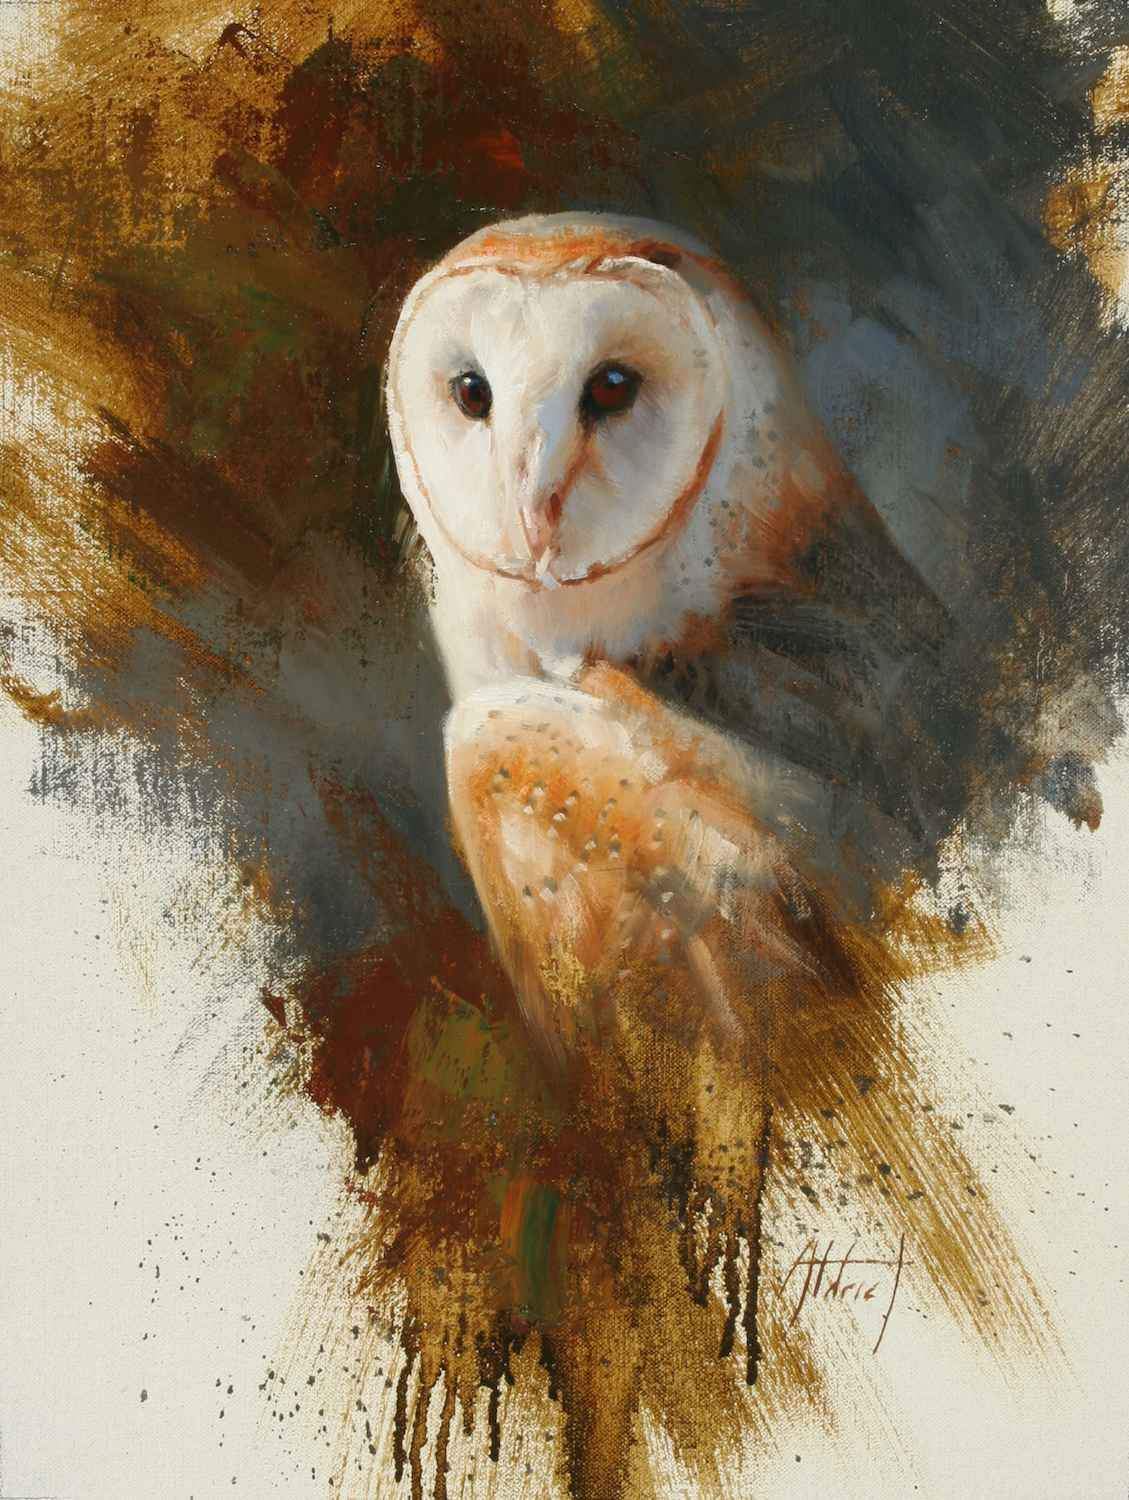 Edward Aldrich-Barn Owl-Sorrel Sky Gallery-Painting